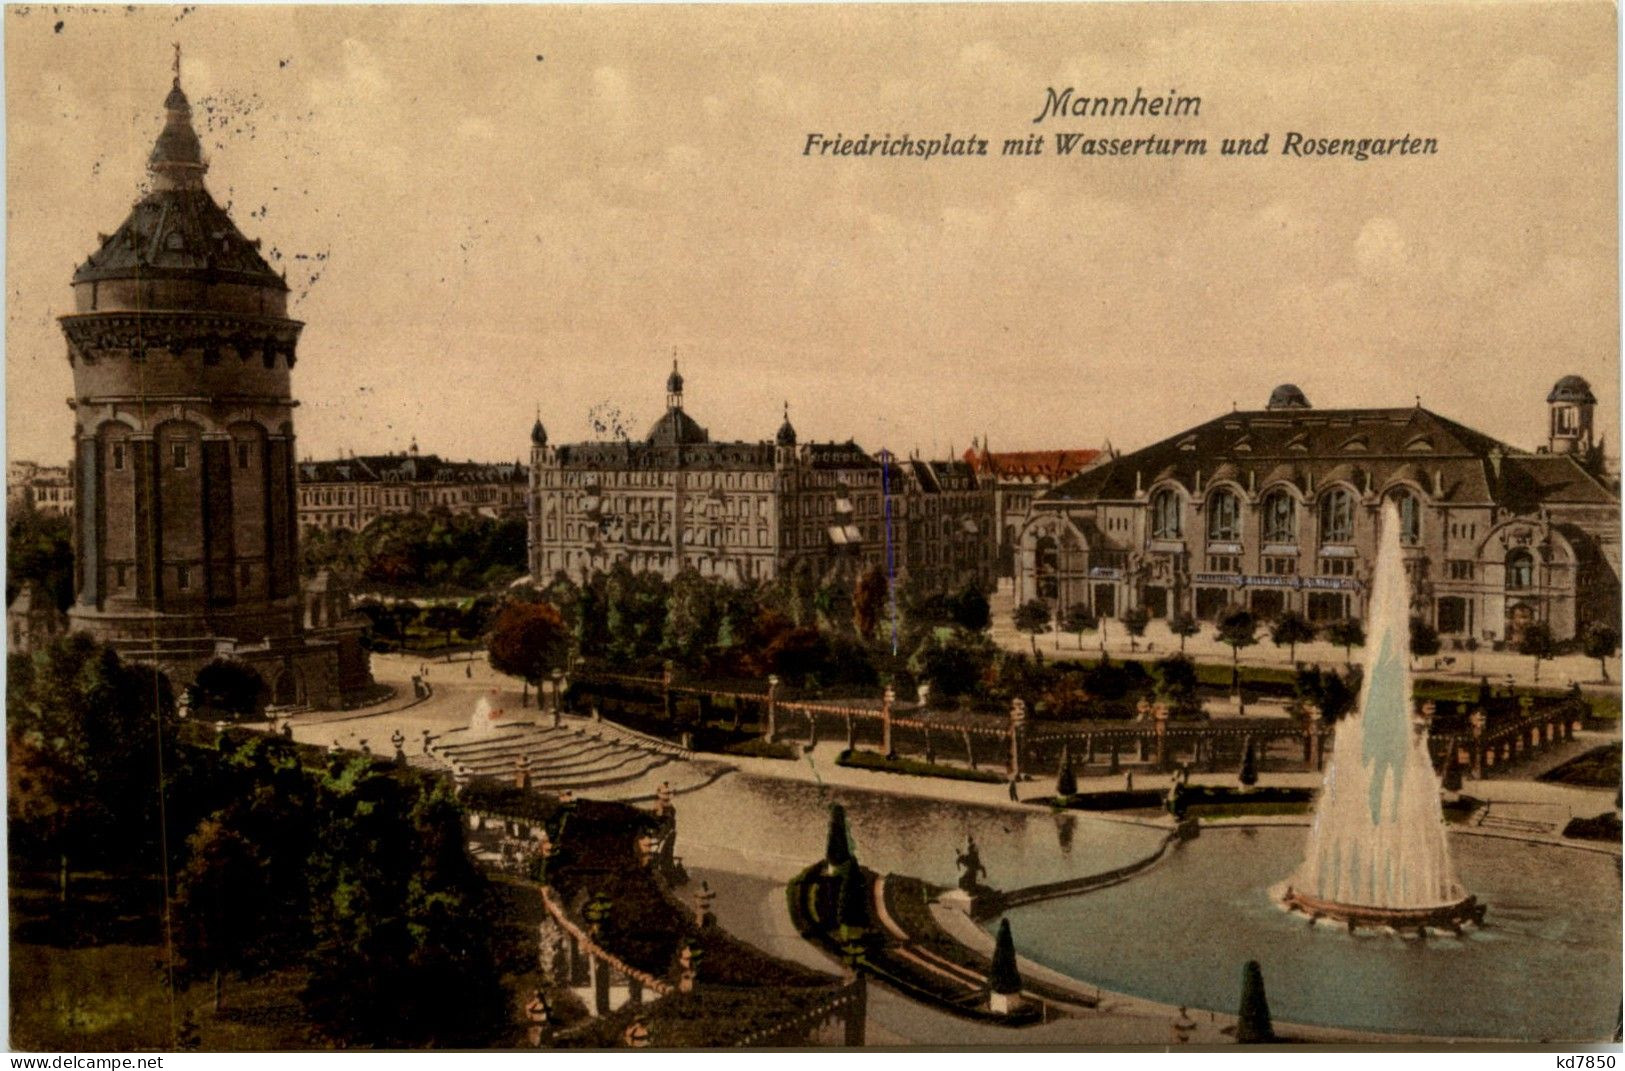 Mannheim - Friedrichsplatz - Mannheim